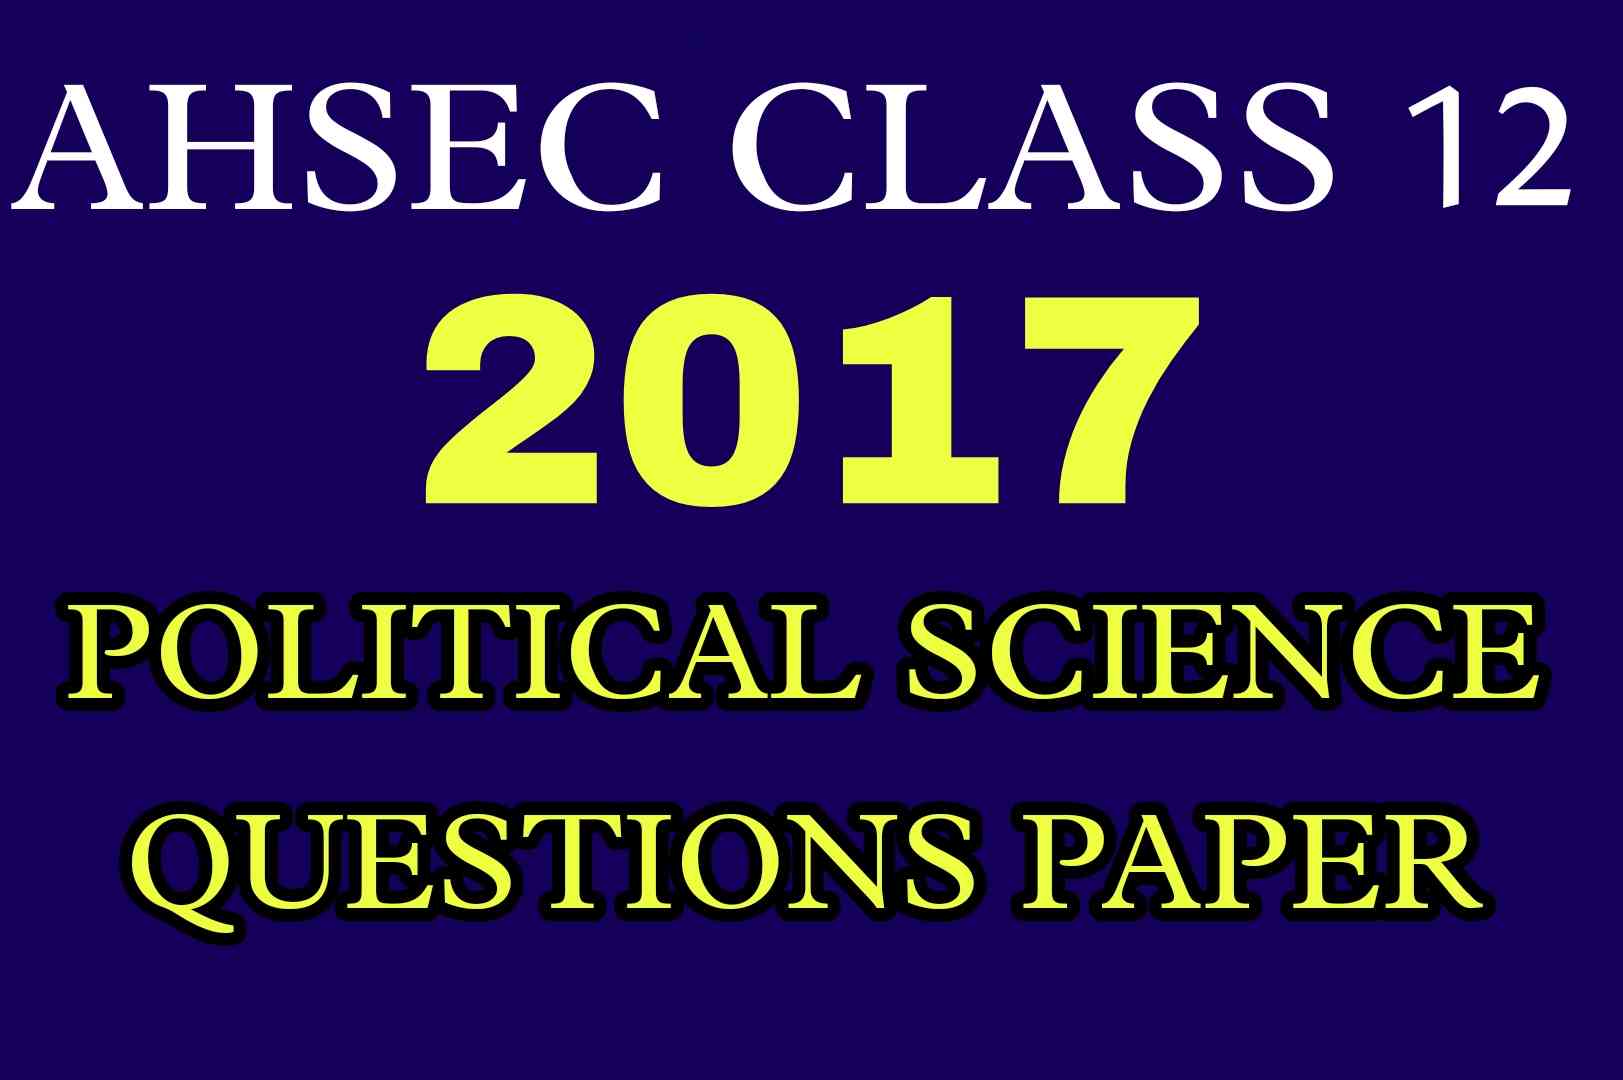 AHSEC Class 12 Political Science Questions Paper 2017 | HS 2nd Year Political Science 2017 Questions Paper